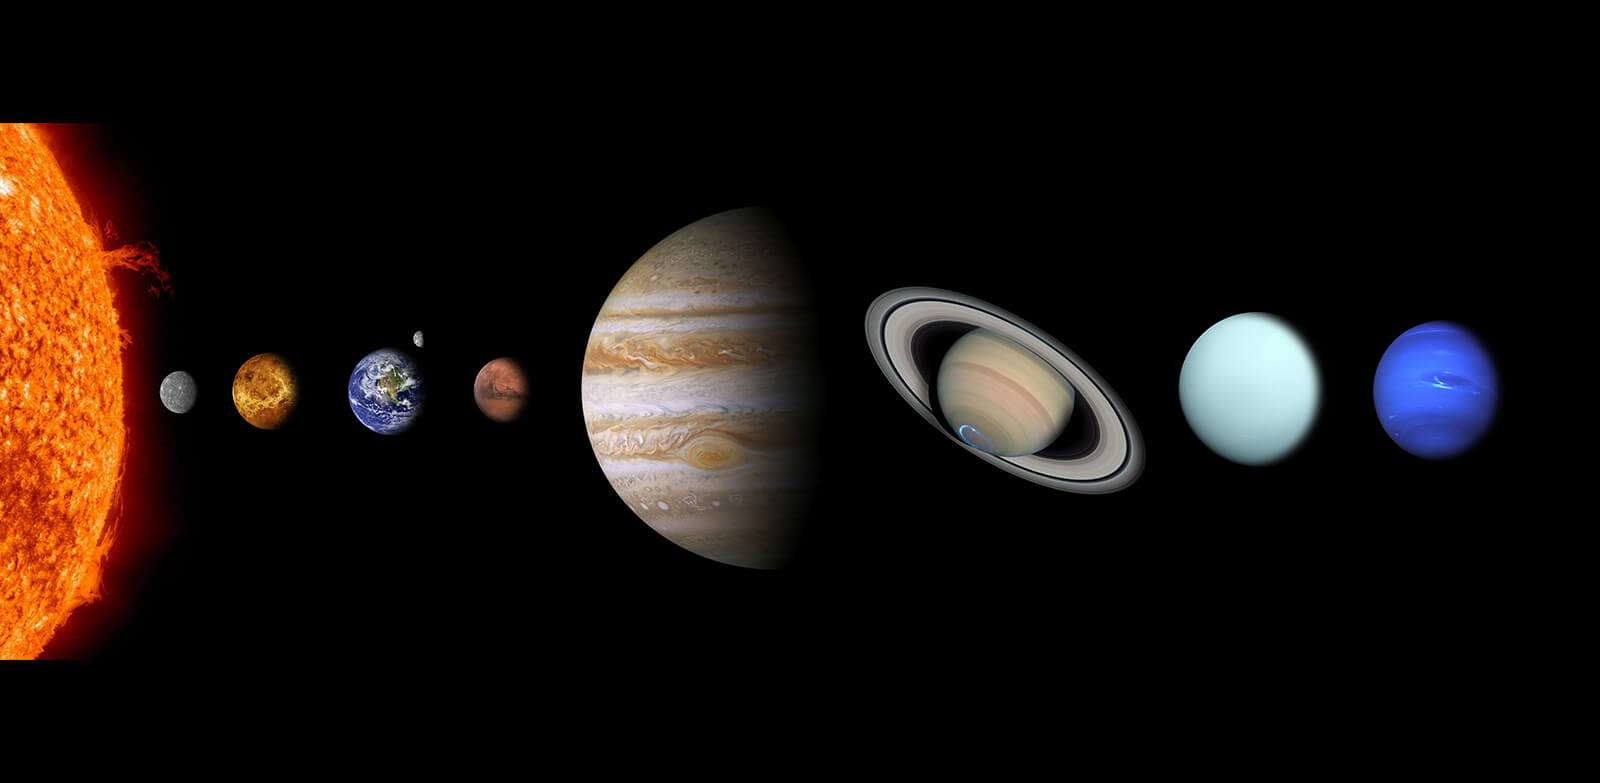 Seitse on silmale nähtavate taevakehade arv: päike, kuu, Merkuur, Veenus, Mars, Jupiter ja Saturn.